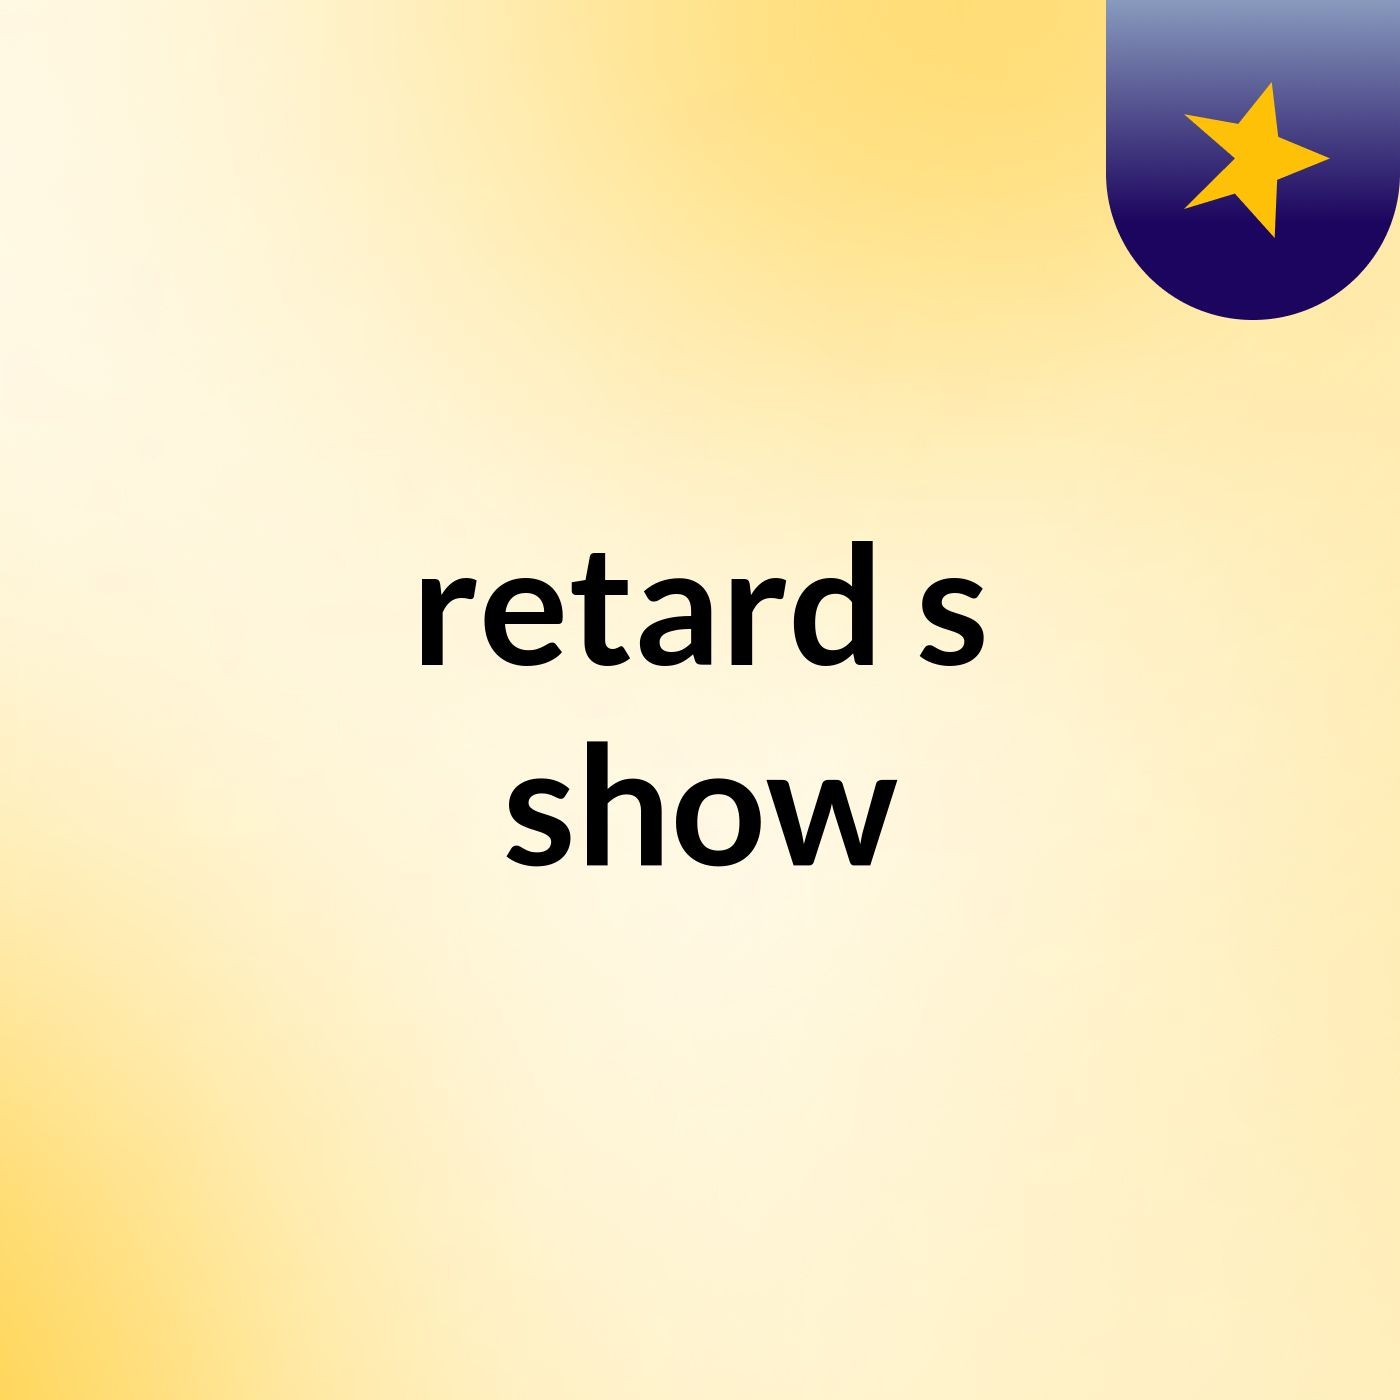 retard's show